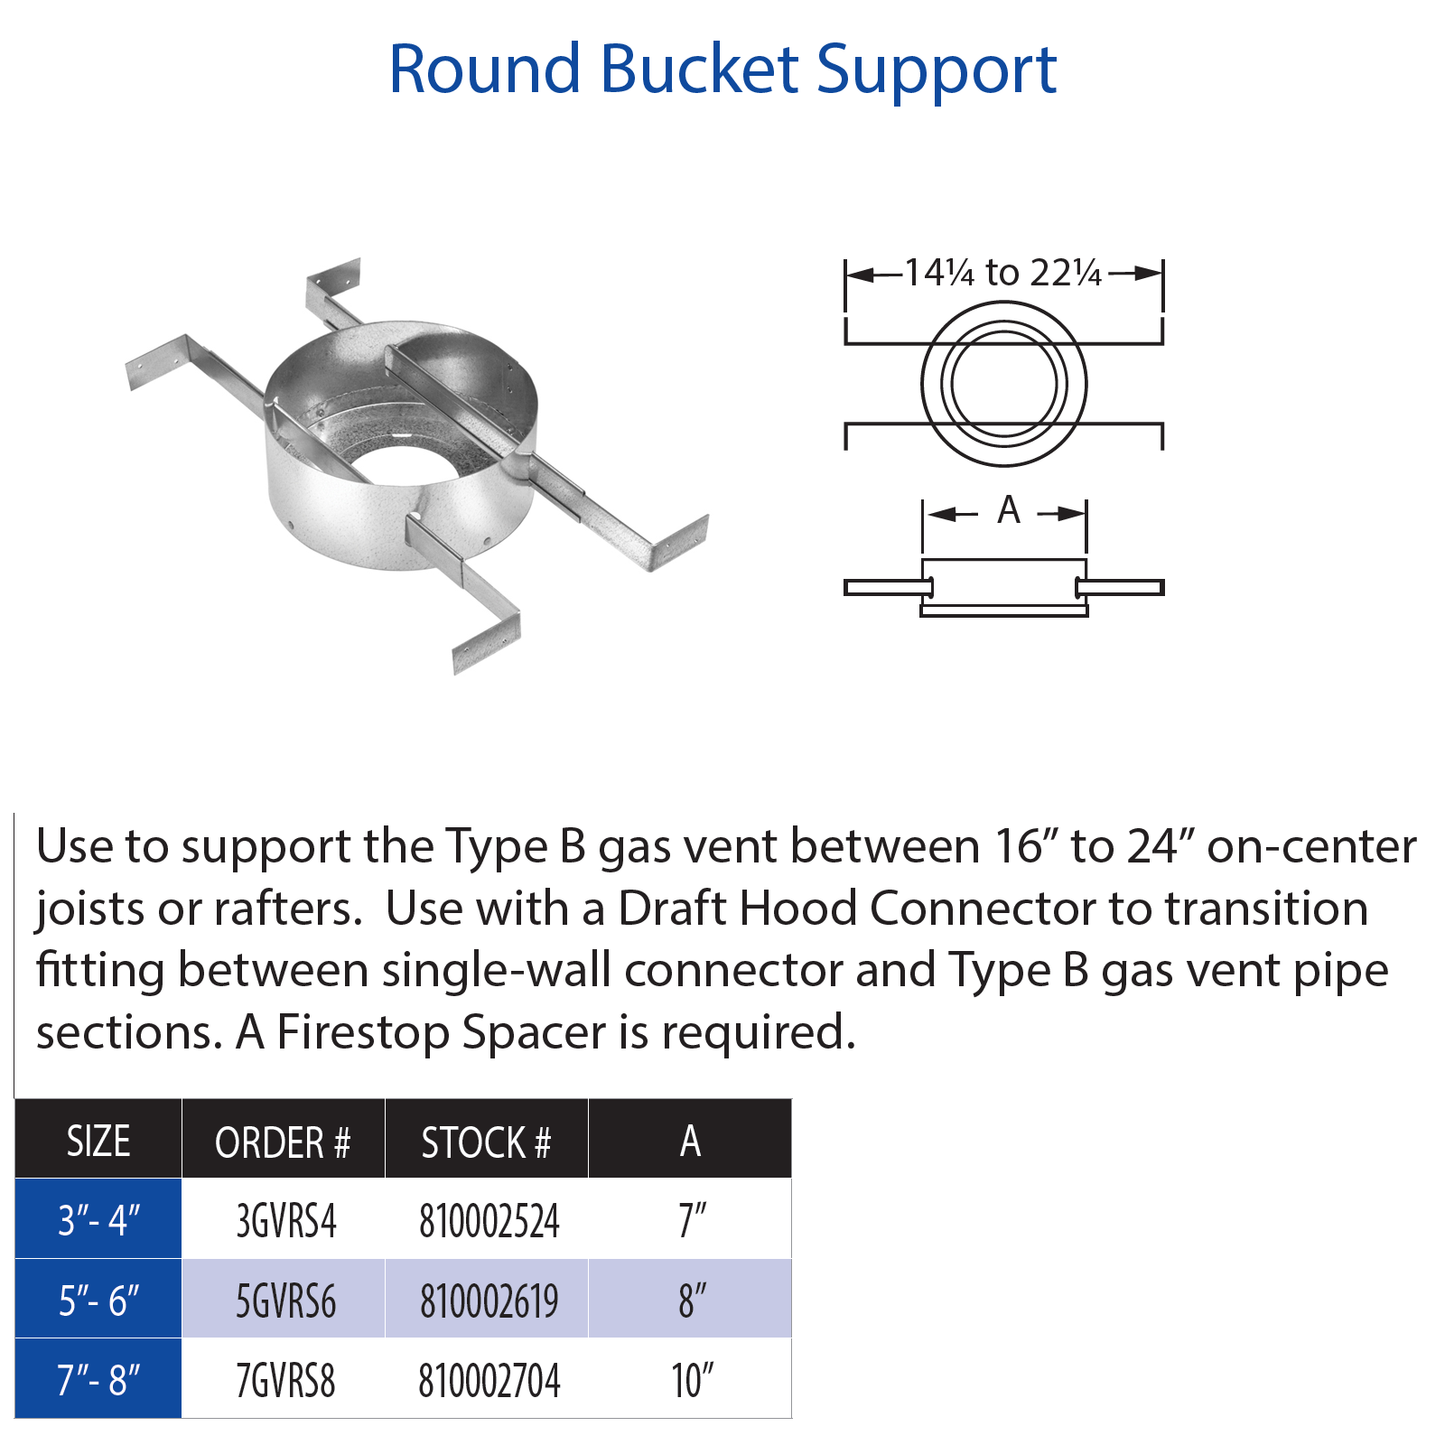 DuraVent Type B Round Bucket Support 5" - 6" | 5GVRS6